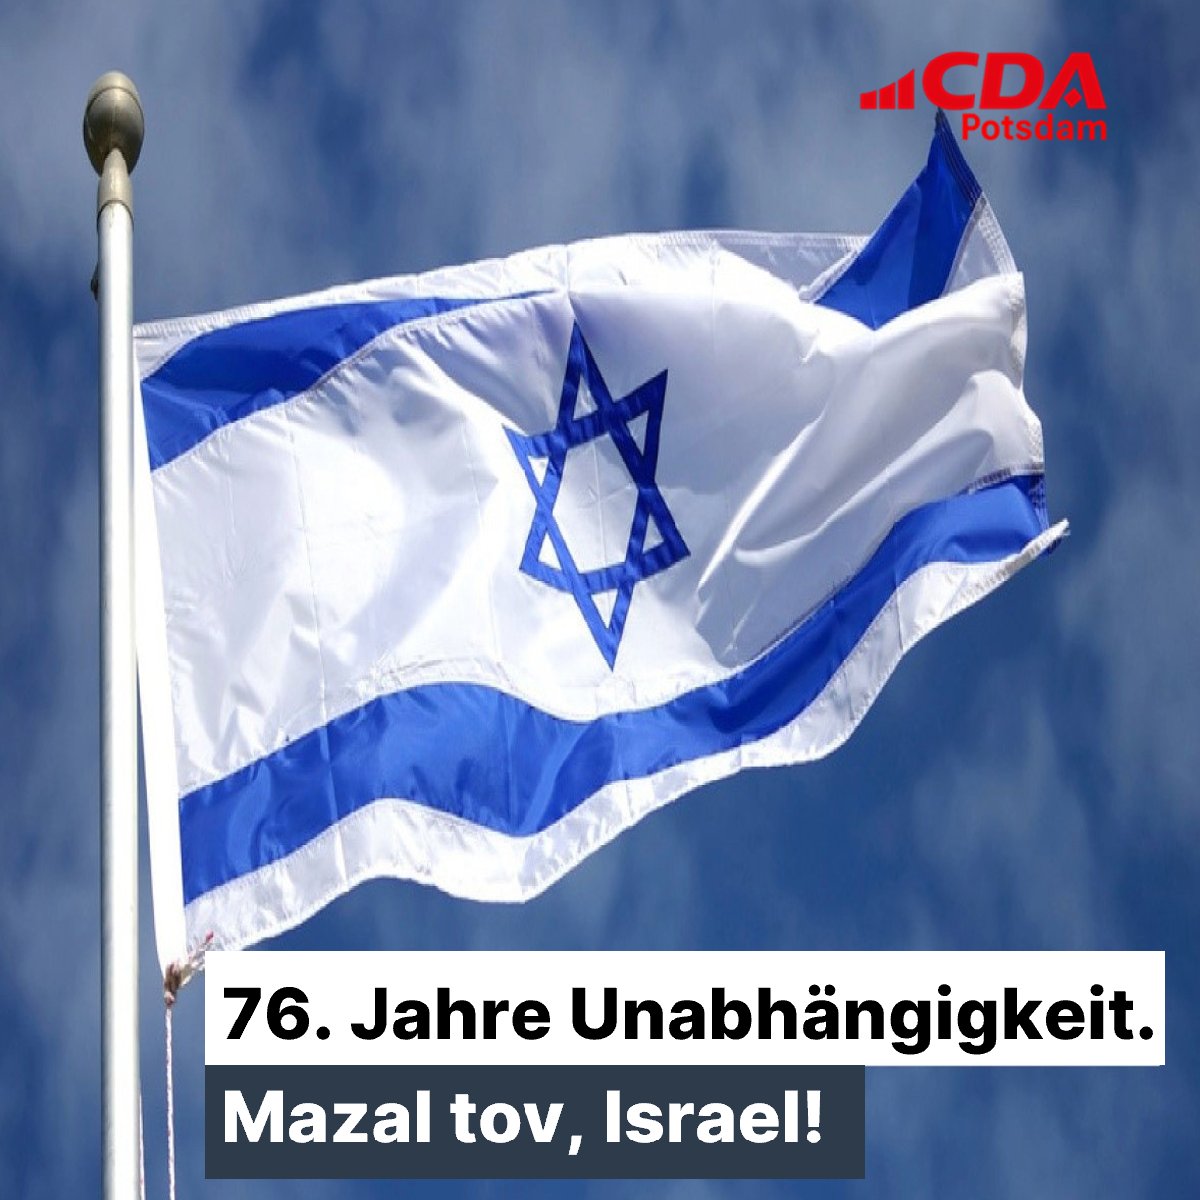 #Israel feiert heute seinen 76. Unabhängigkeitstag. Mazal tov, Israel! Und Chag Ha'atzmaut Sameach allen. 🇮🇱